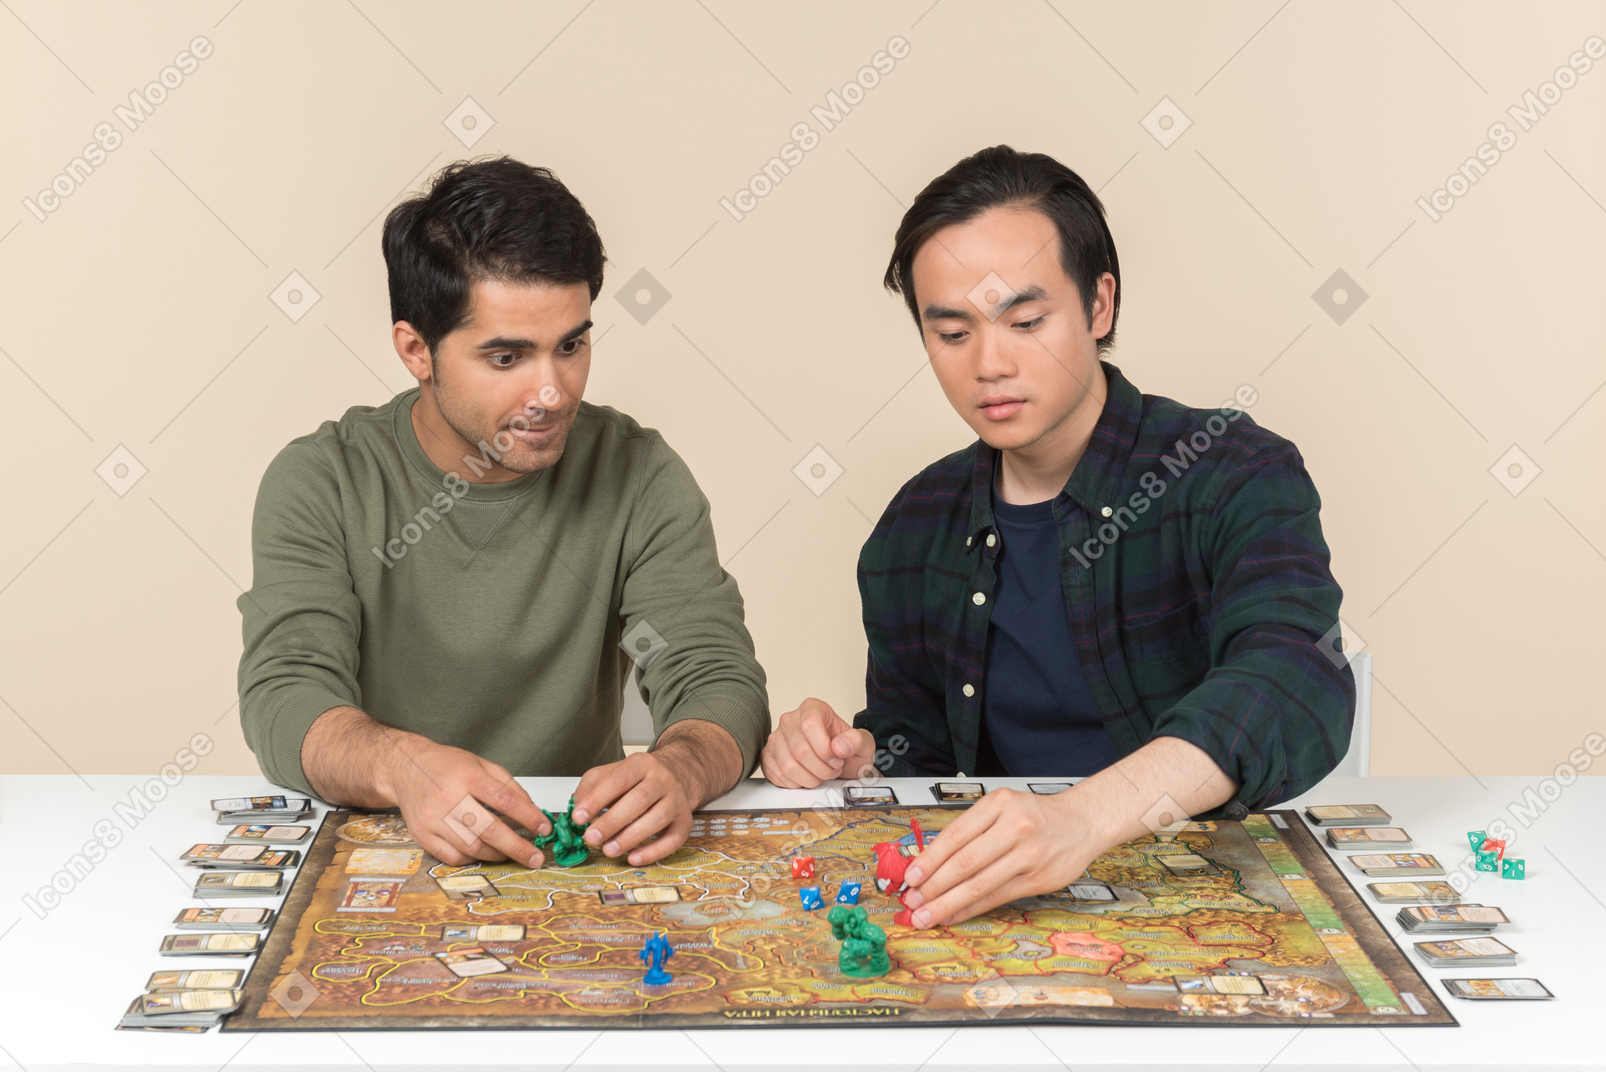 테이블에 앉아 보드 게임을하는 인종 간 남자 친구